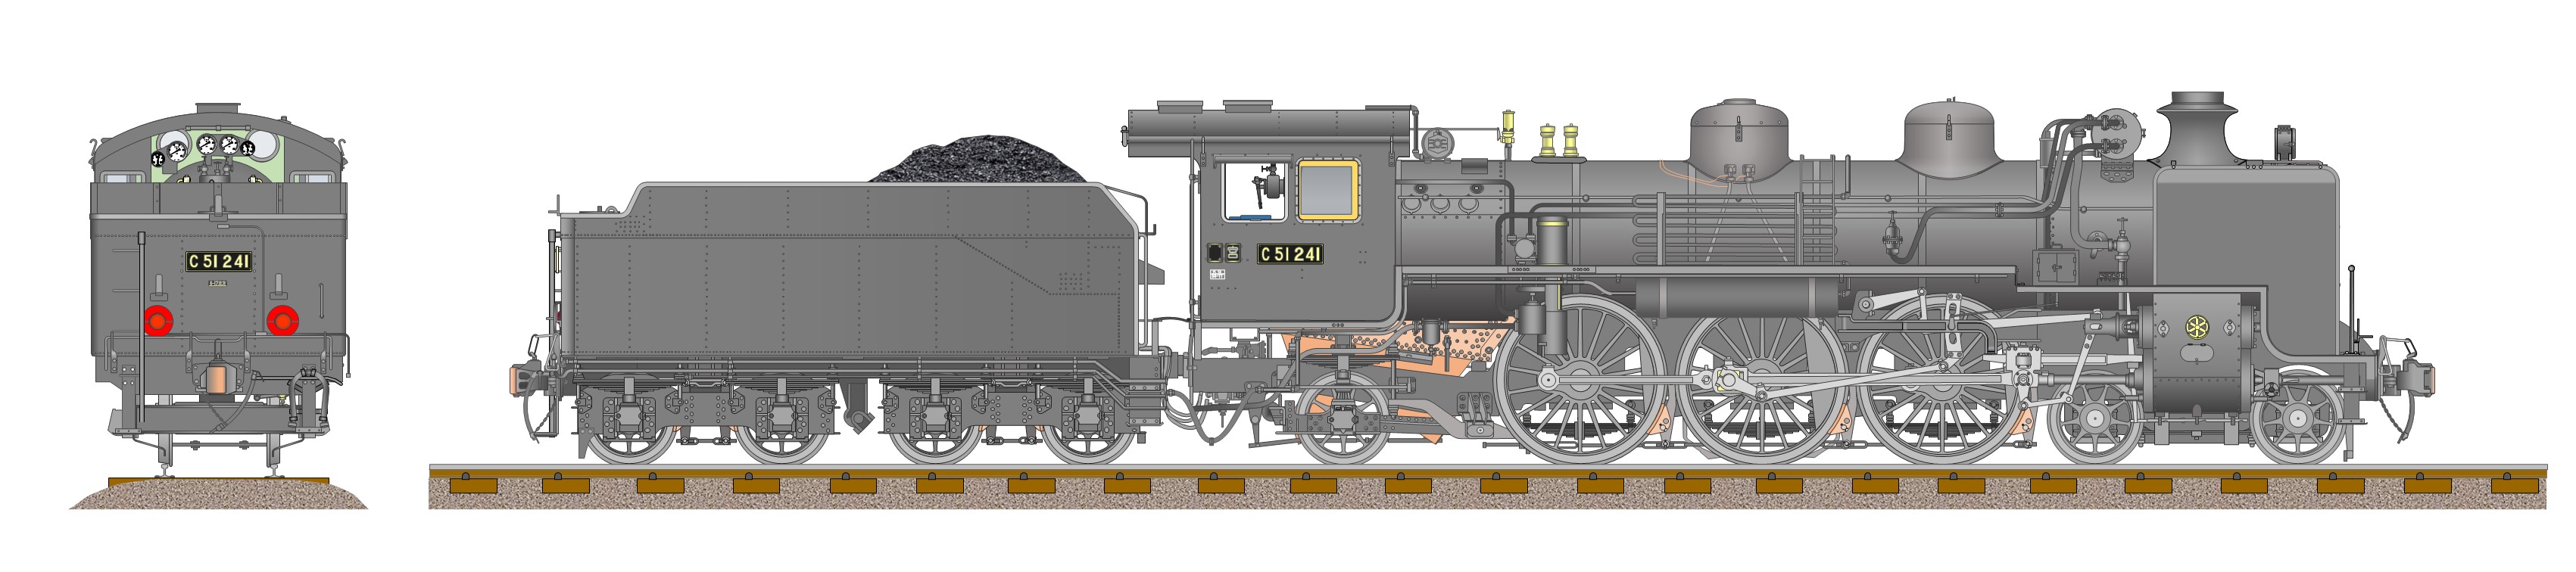 【送料込み】国鉄 SL 蒸気機関車銘版 D51 139その他